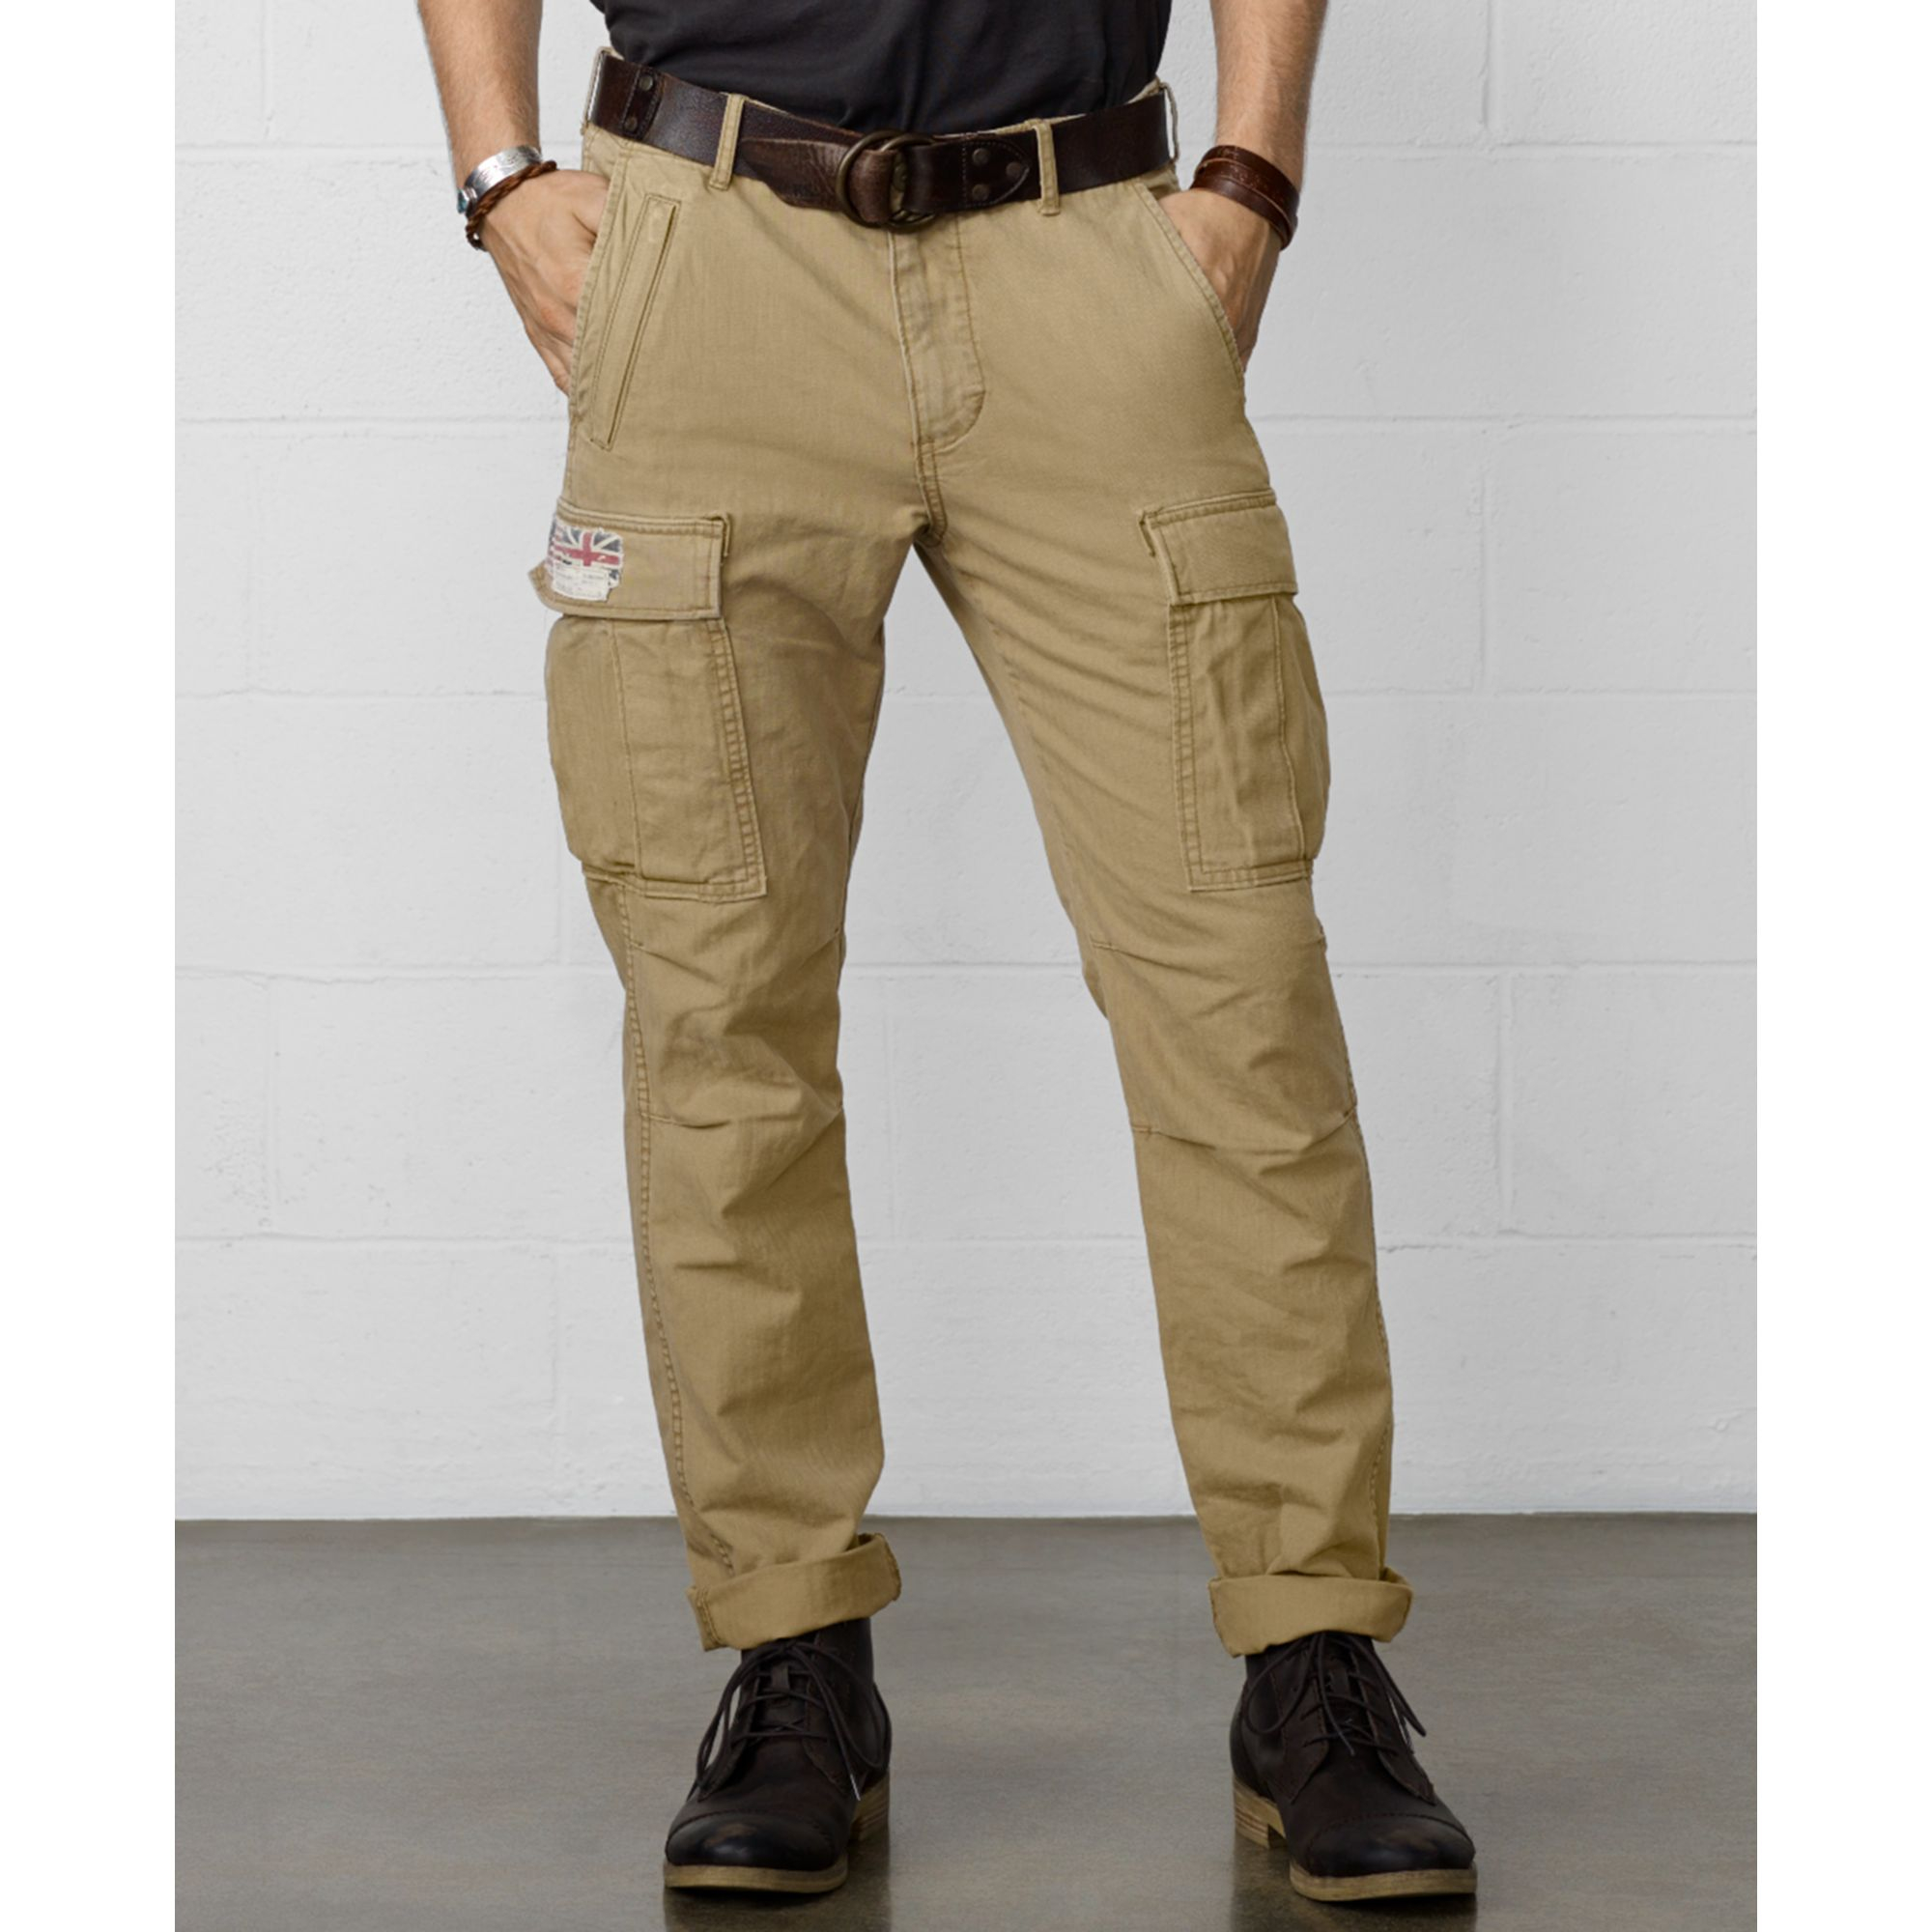 Denim Supply Ralph Lauren Khaki Zip Pocket Cargo Pants Product 1 16983196 0 707338692 Normal 